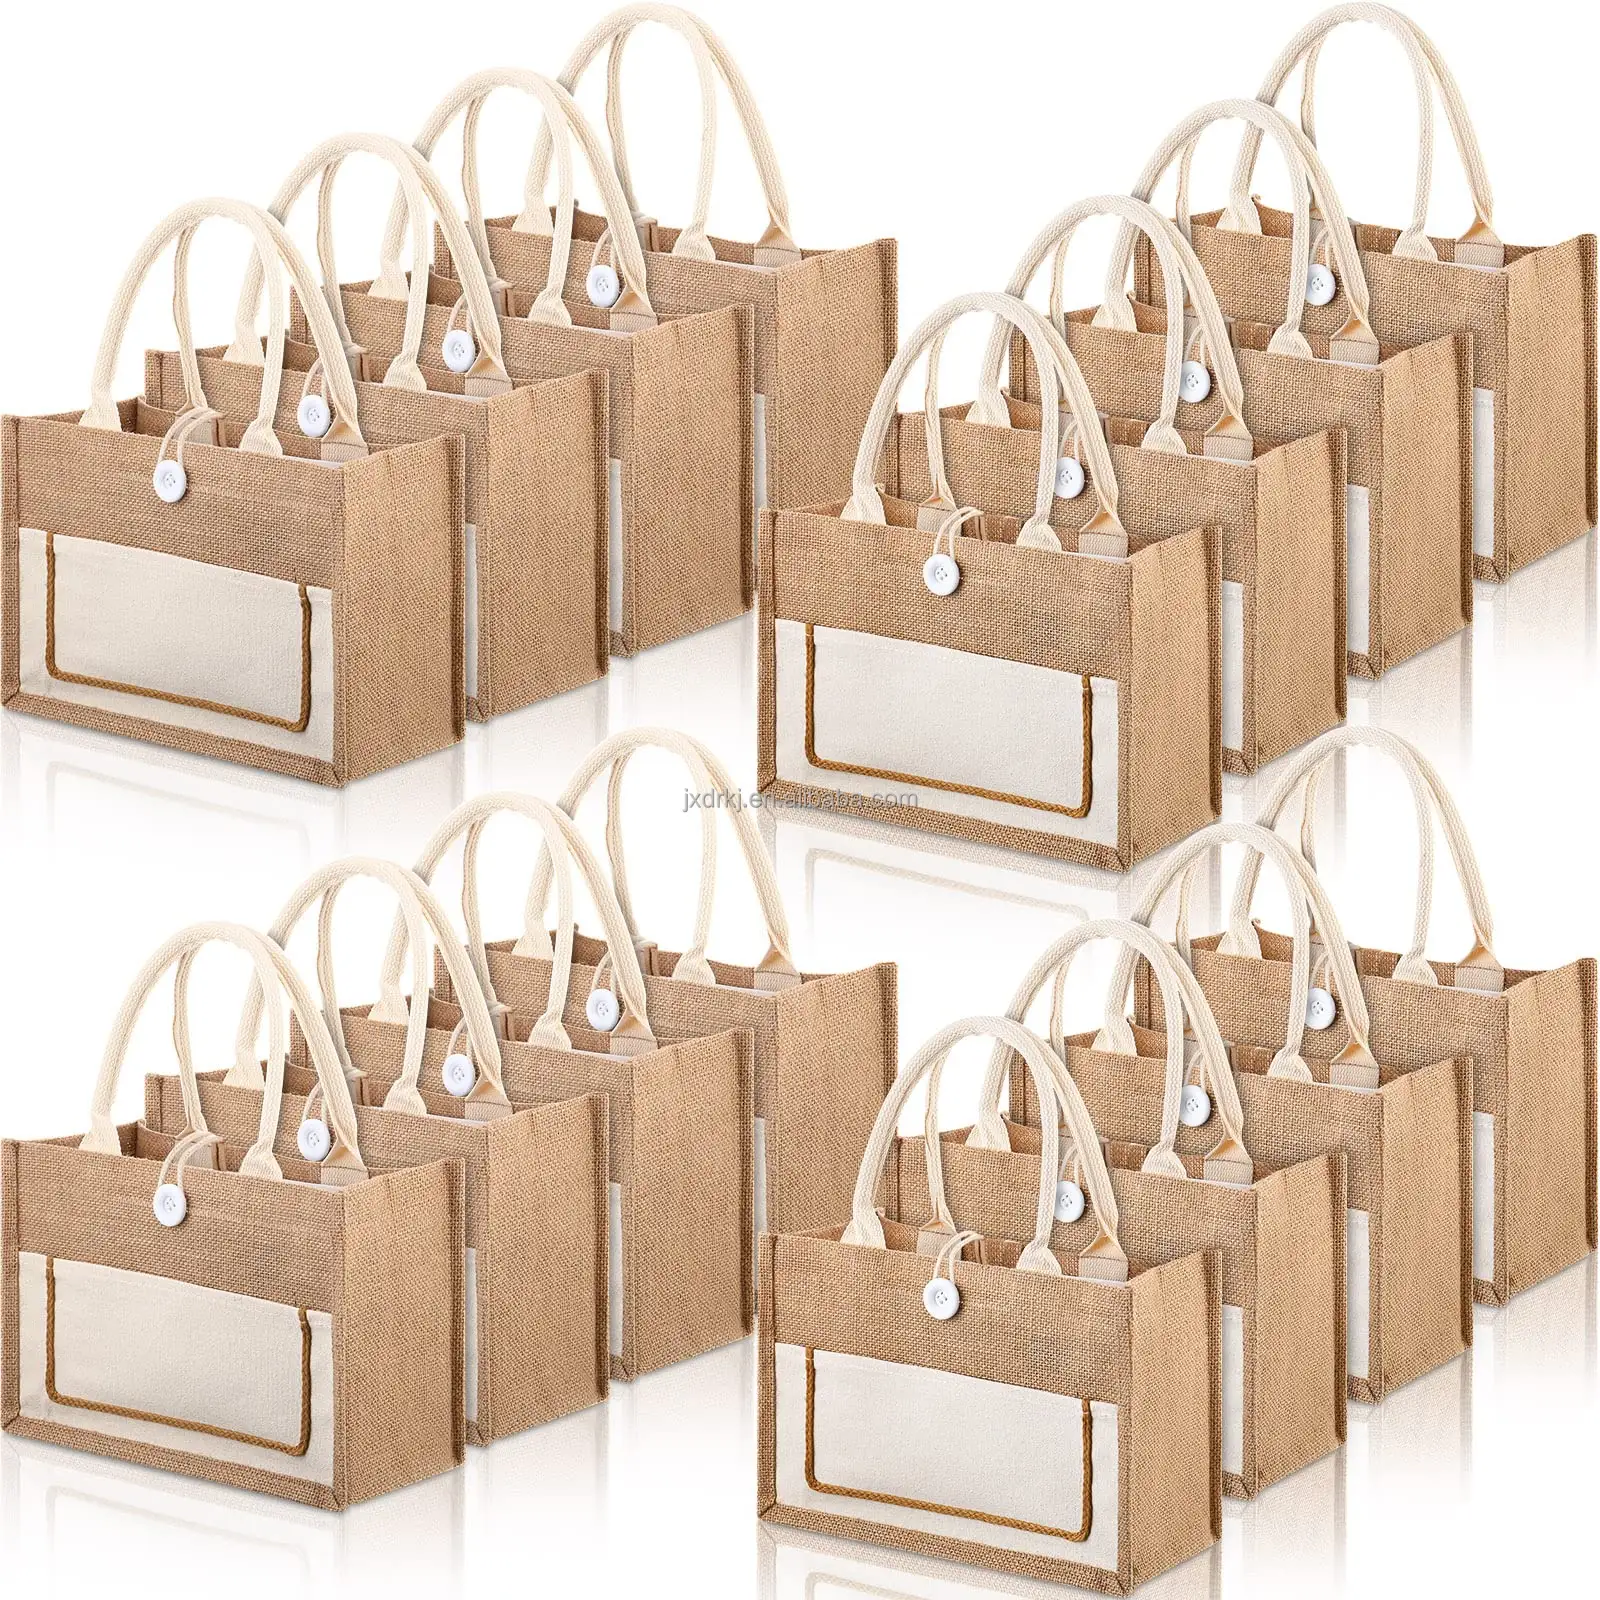 防水再利用可能な黄麻布バッグカスタムジュートバッグショッピング用の小さな黄麻布ジュートトートバッグ